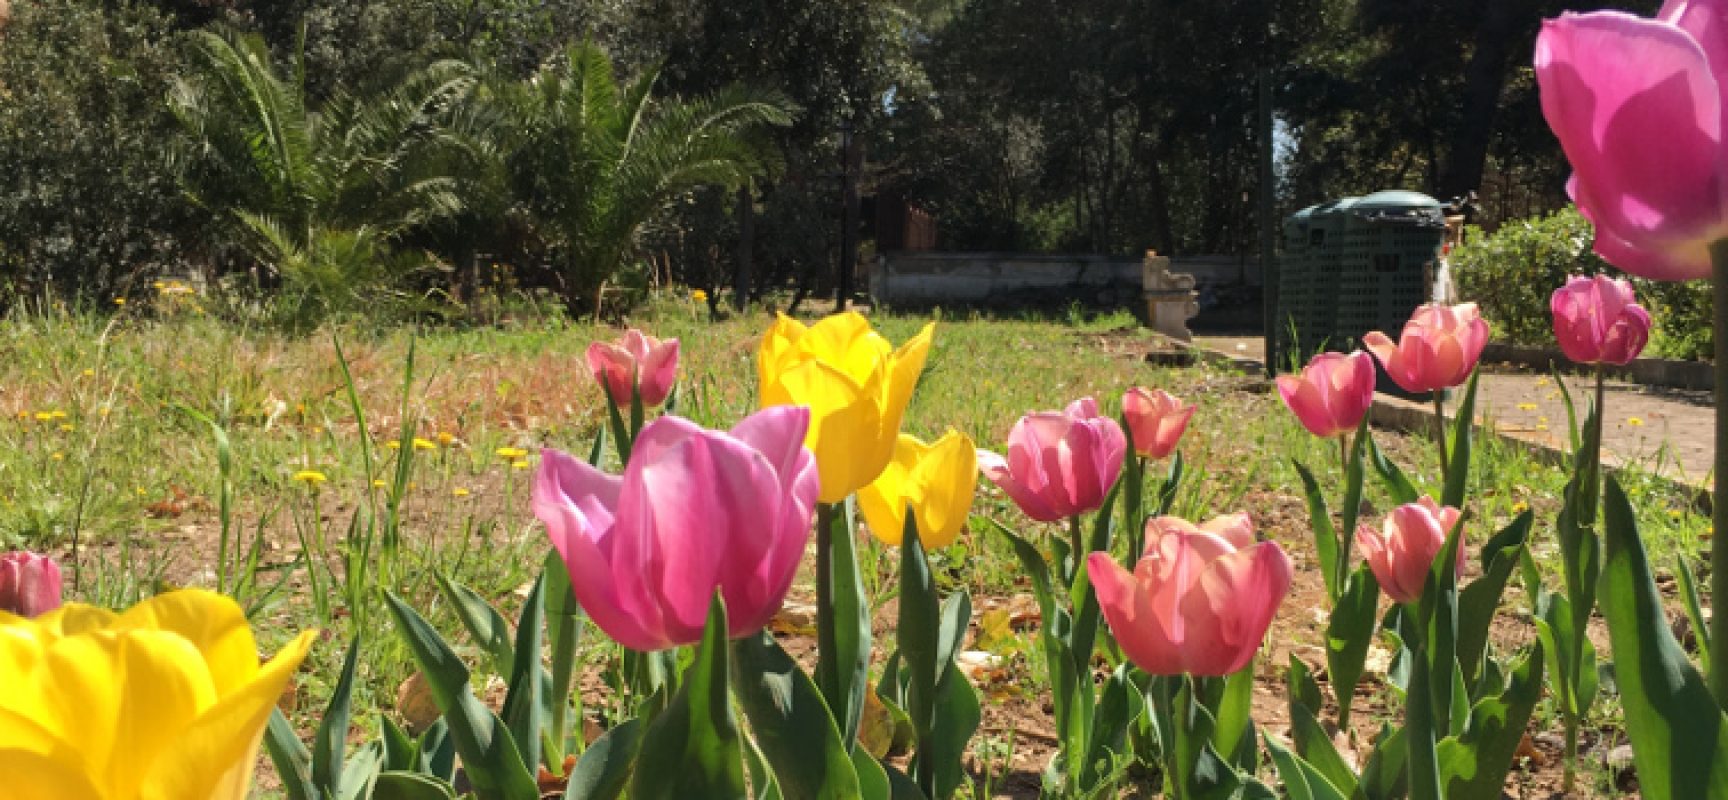 Concorso per scuole pugliesi, in palio bulbi di tulipano da piantare nelle aree verdi